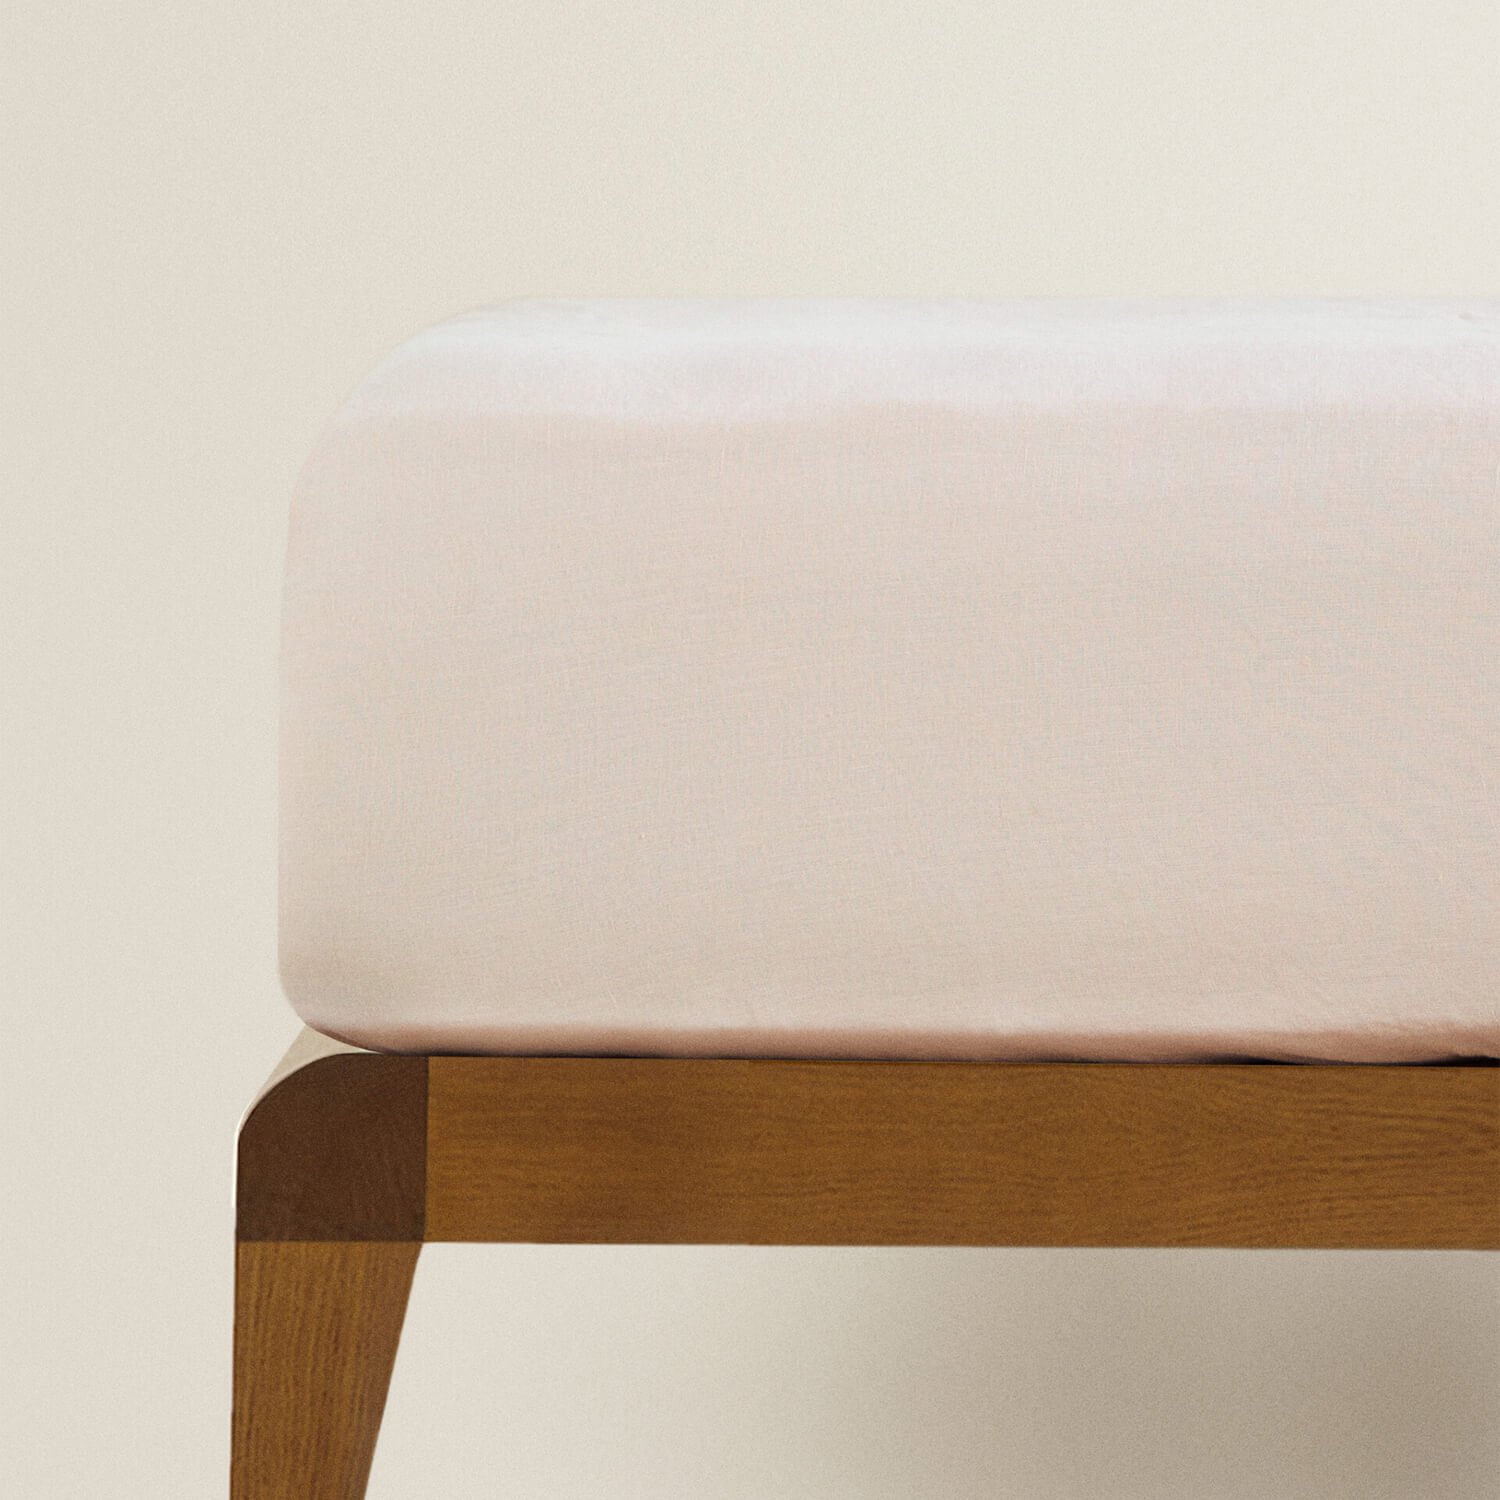 Простыня на резинке Zara Home Children’s Washed Linen, розовый простыня однотонная из стираного льна 270 x 290 см зеленый